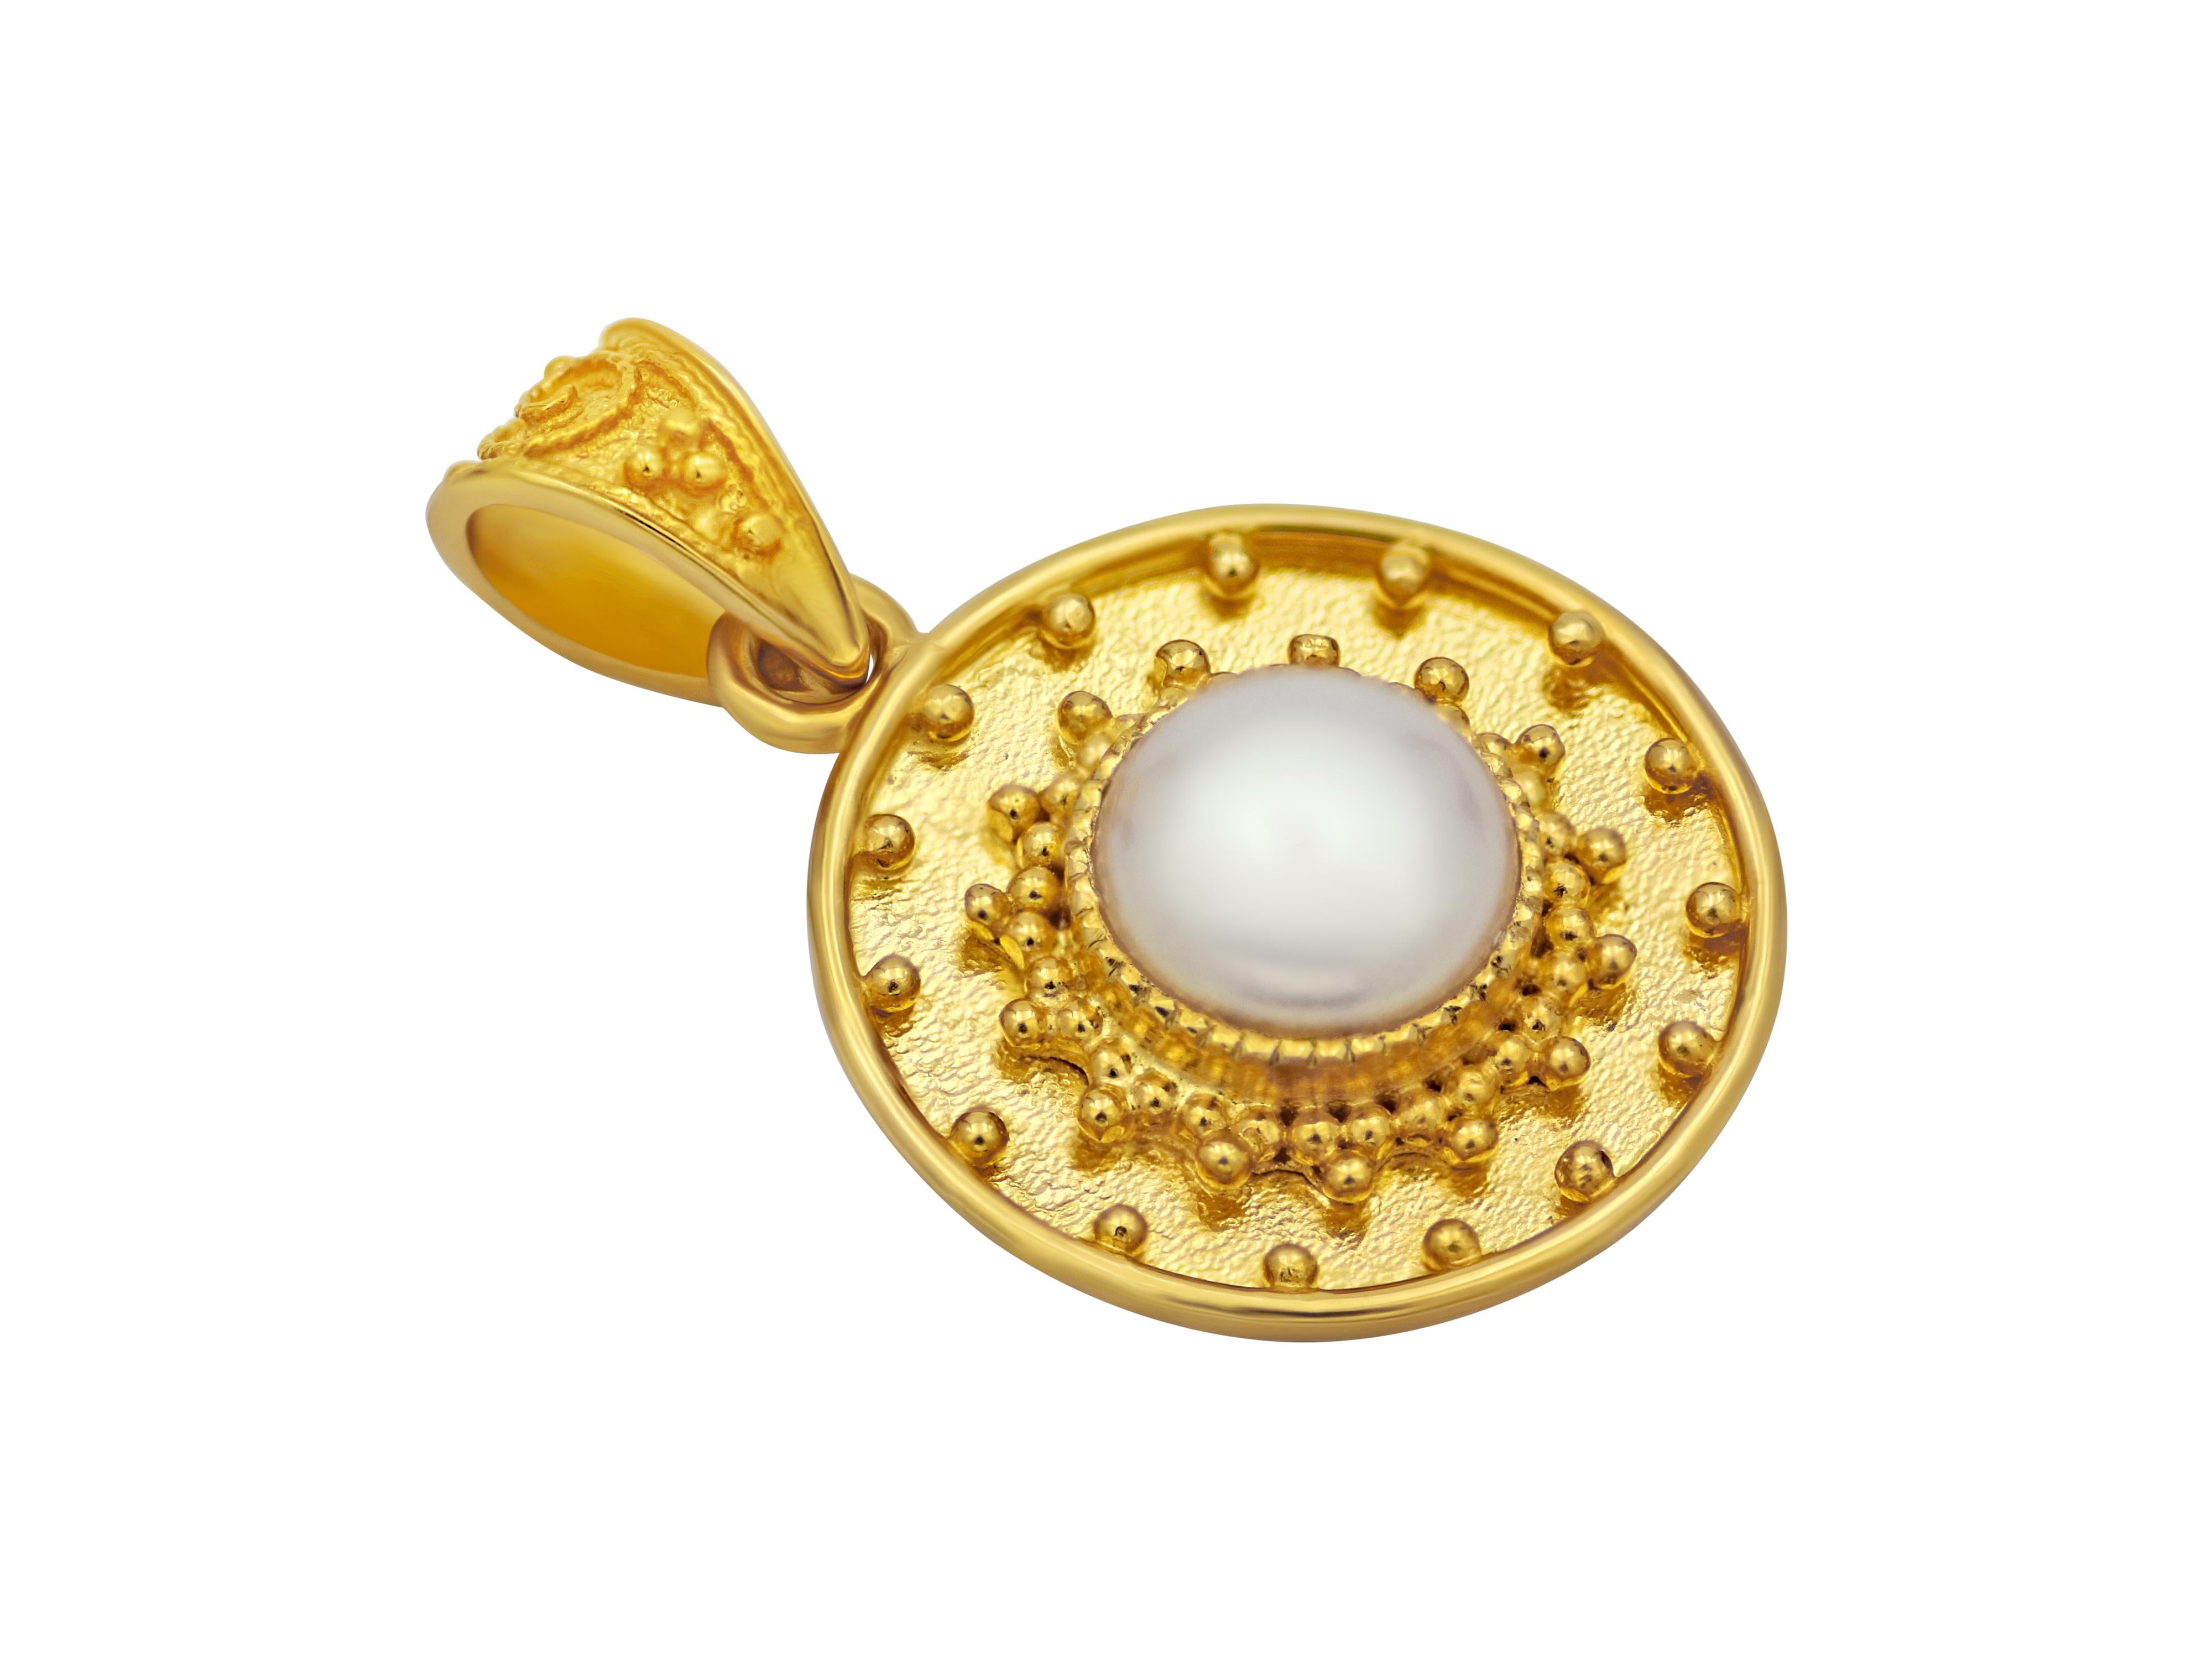 pendentif en or jaune 18k entièrement fait à la main encadrant une perle naturelle avec un travail artistique granulé. Une taille idéale pour compléter vos pendentifs de superposition.